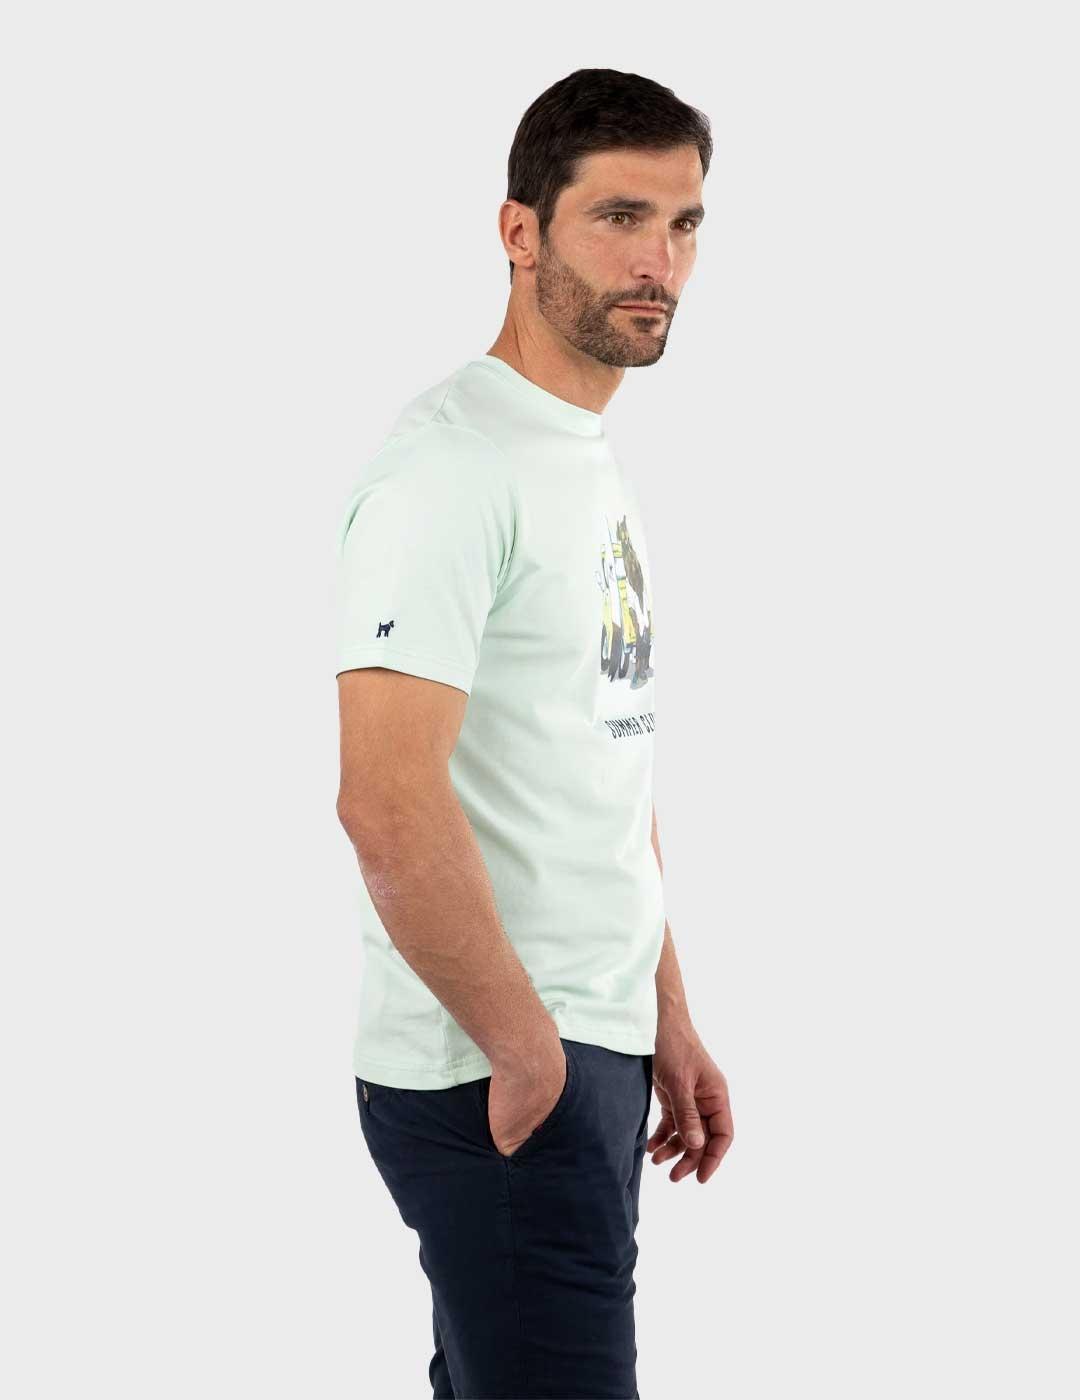 Williot Mr Williot Furgo Camiseta turquesa para hombre